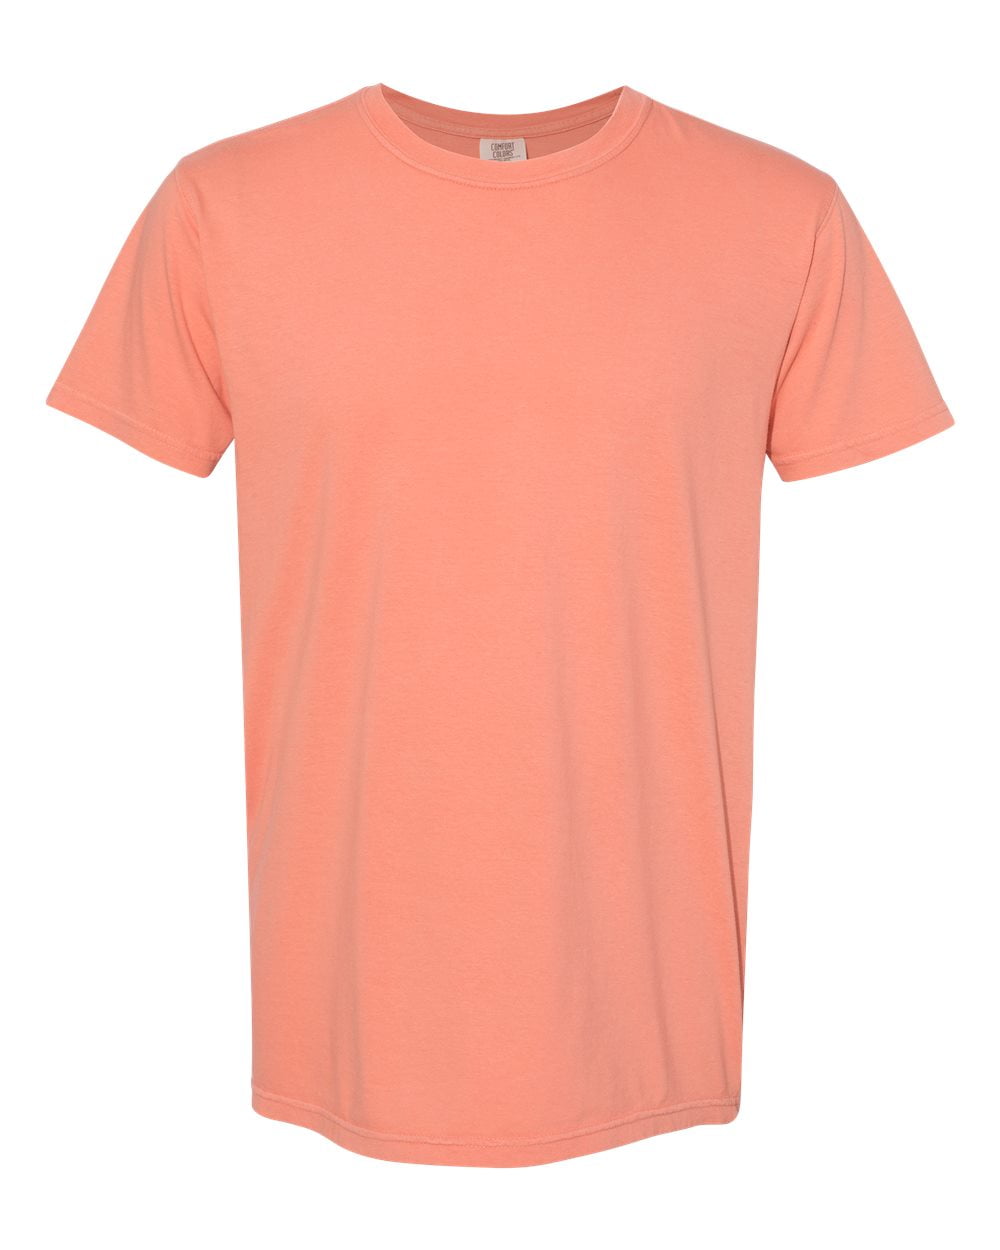 Comfort Colors - Garment Dyed Lightweight Ringspun Short Sleeve T-Shirt